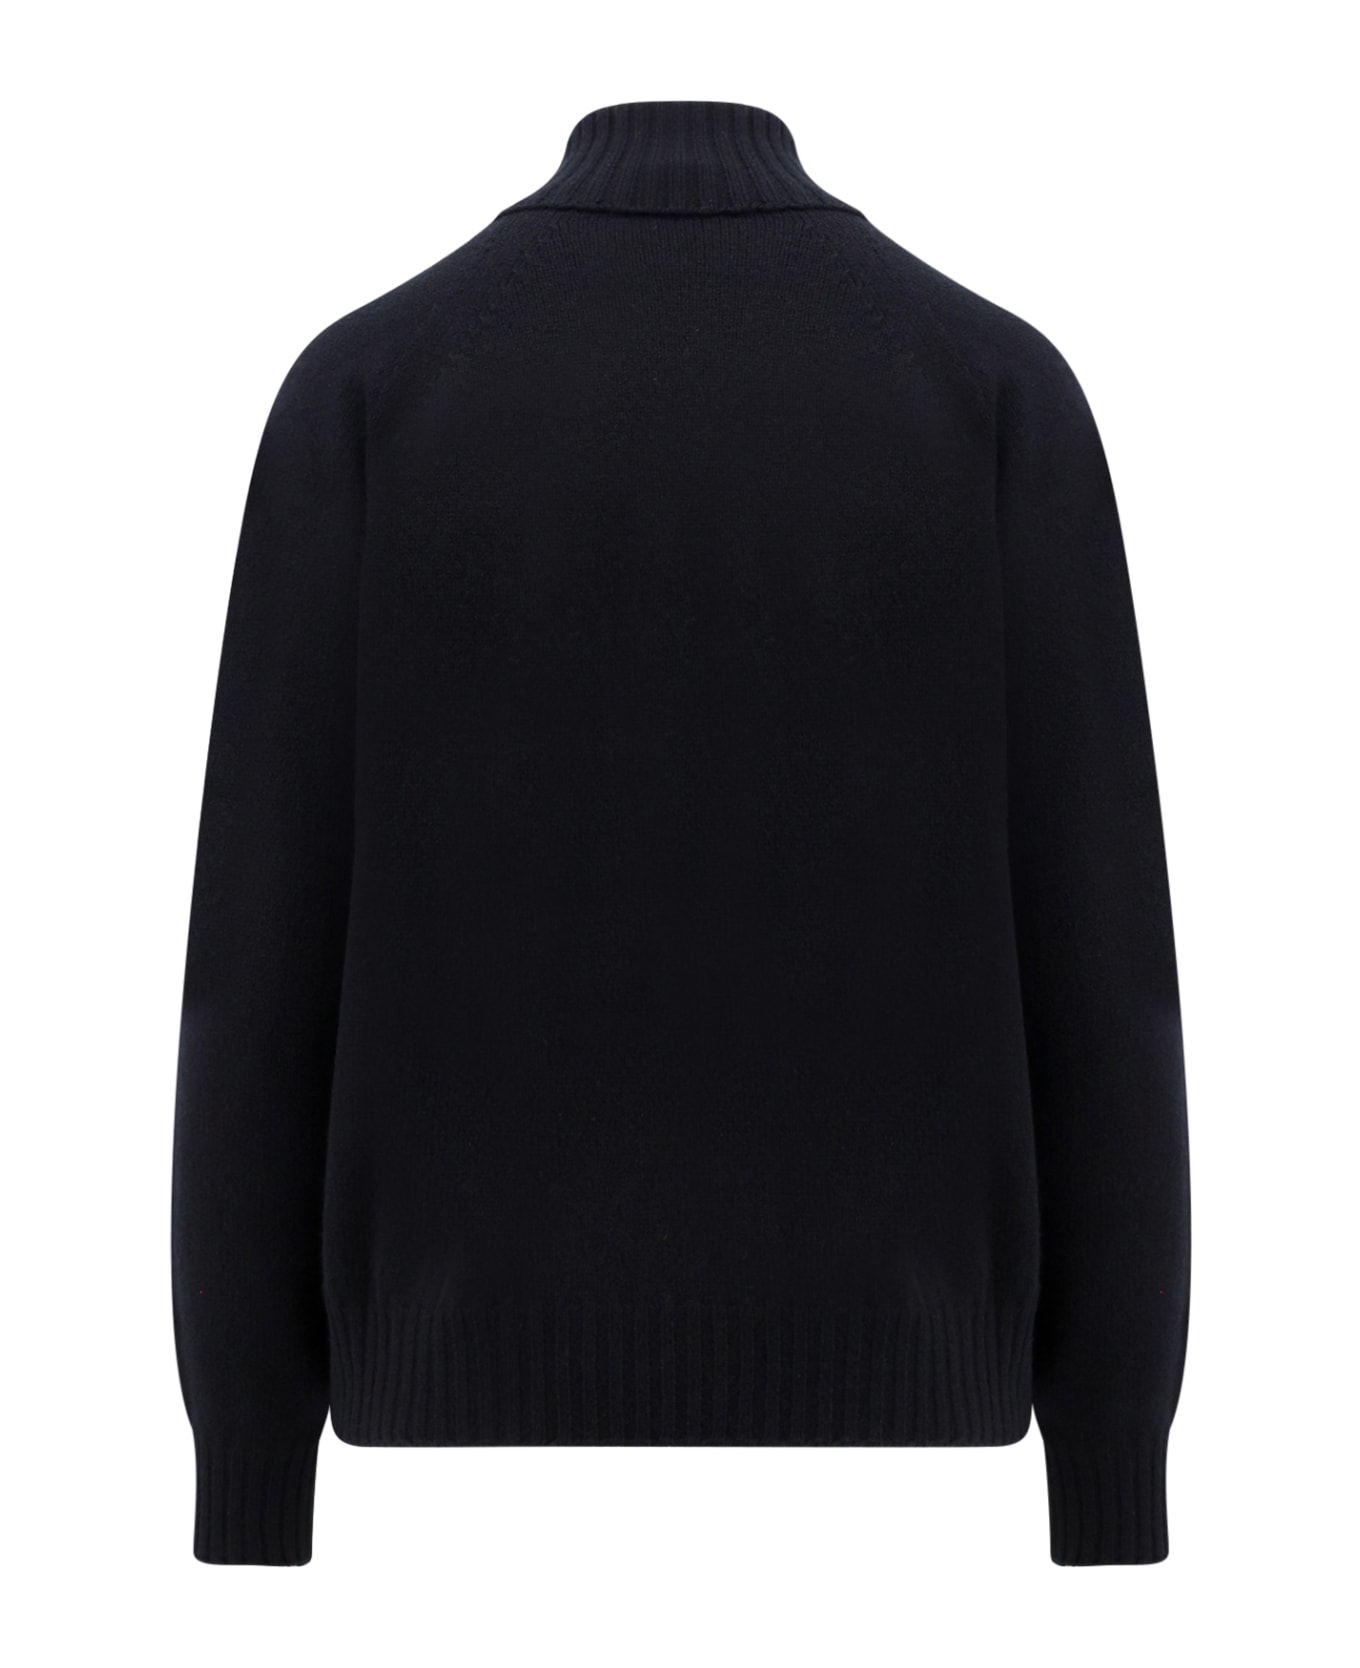 Drumohr Sweater - Black ニットウェア